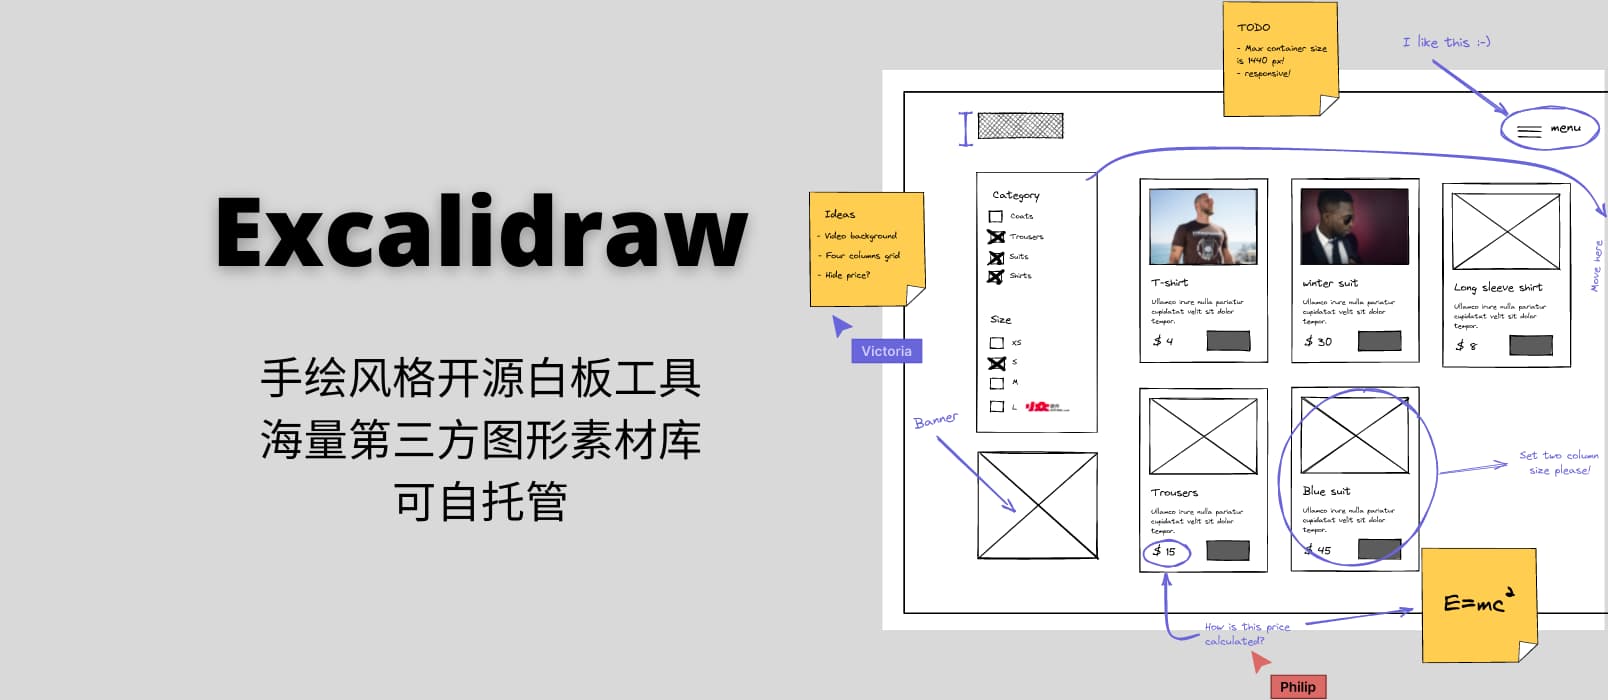 Excalidraw - 手绘风格的开源白板工具，海量第三方图形素材库，可自托管